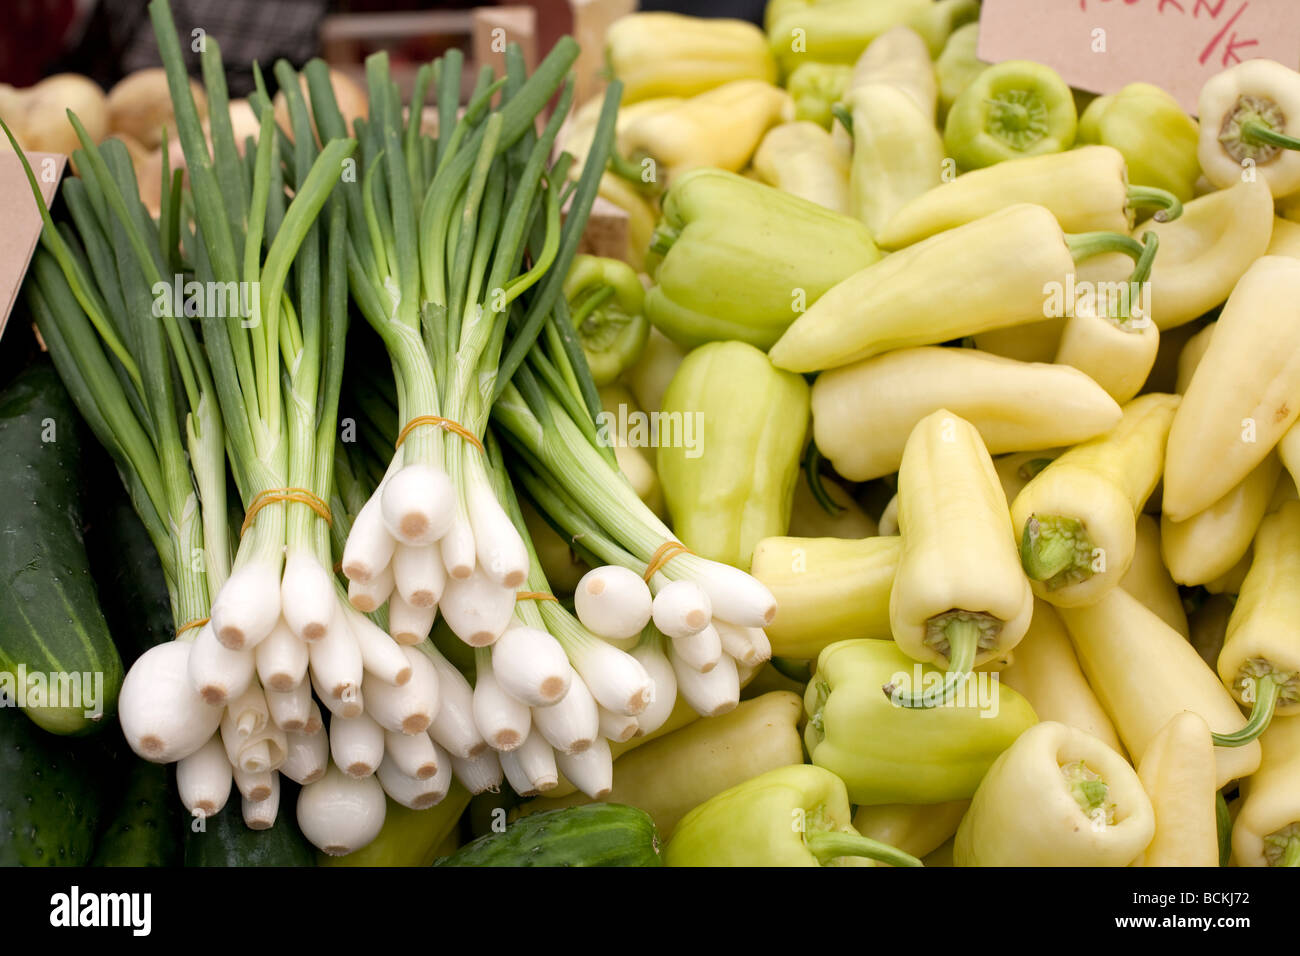 Les jeunes concombres vert oignon liants et poivron vert jaune sont vendus au marché des légumes Banque D'Images